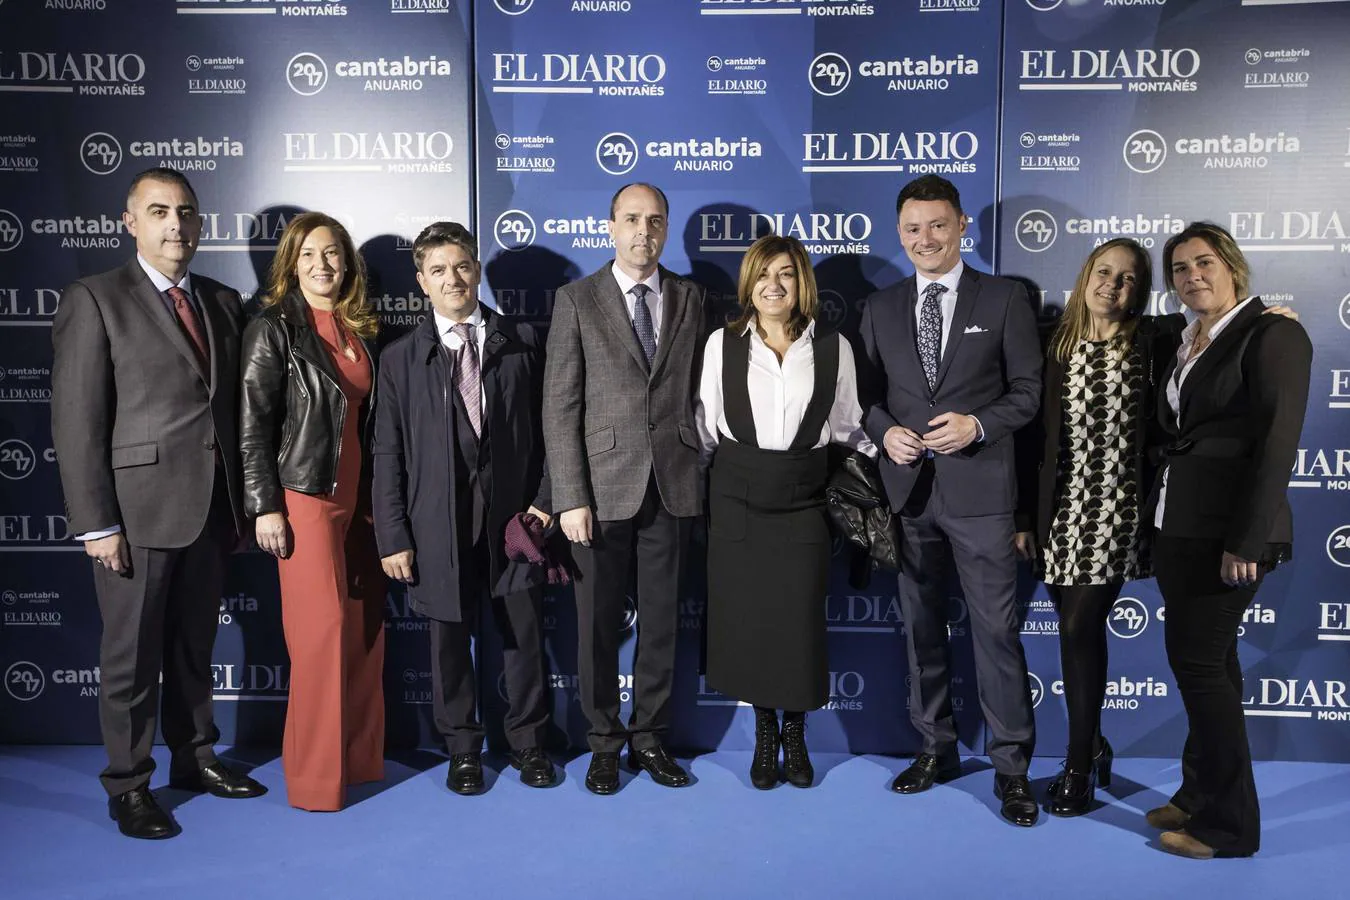 Roberto Media, María José González, Cándido Cobo, Juan José Alonso, María José Sáenz de Buruaga, Alejandro Liz, Isabel Urrutia y Leticia Cubillas.